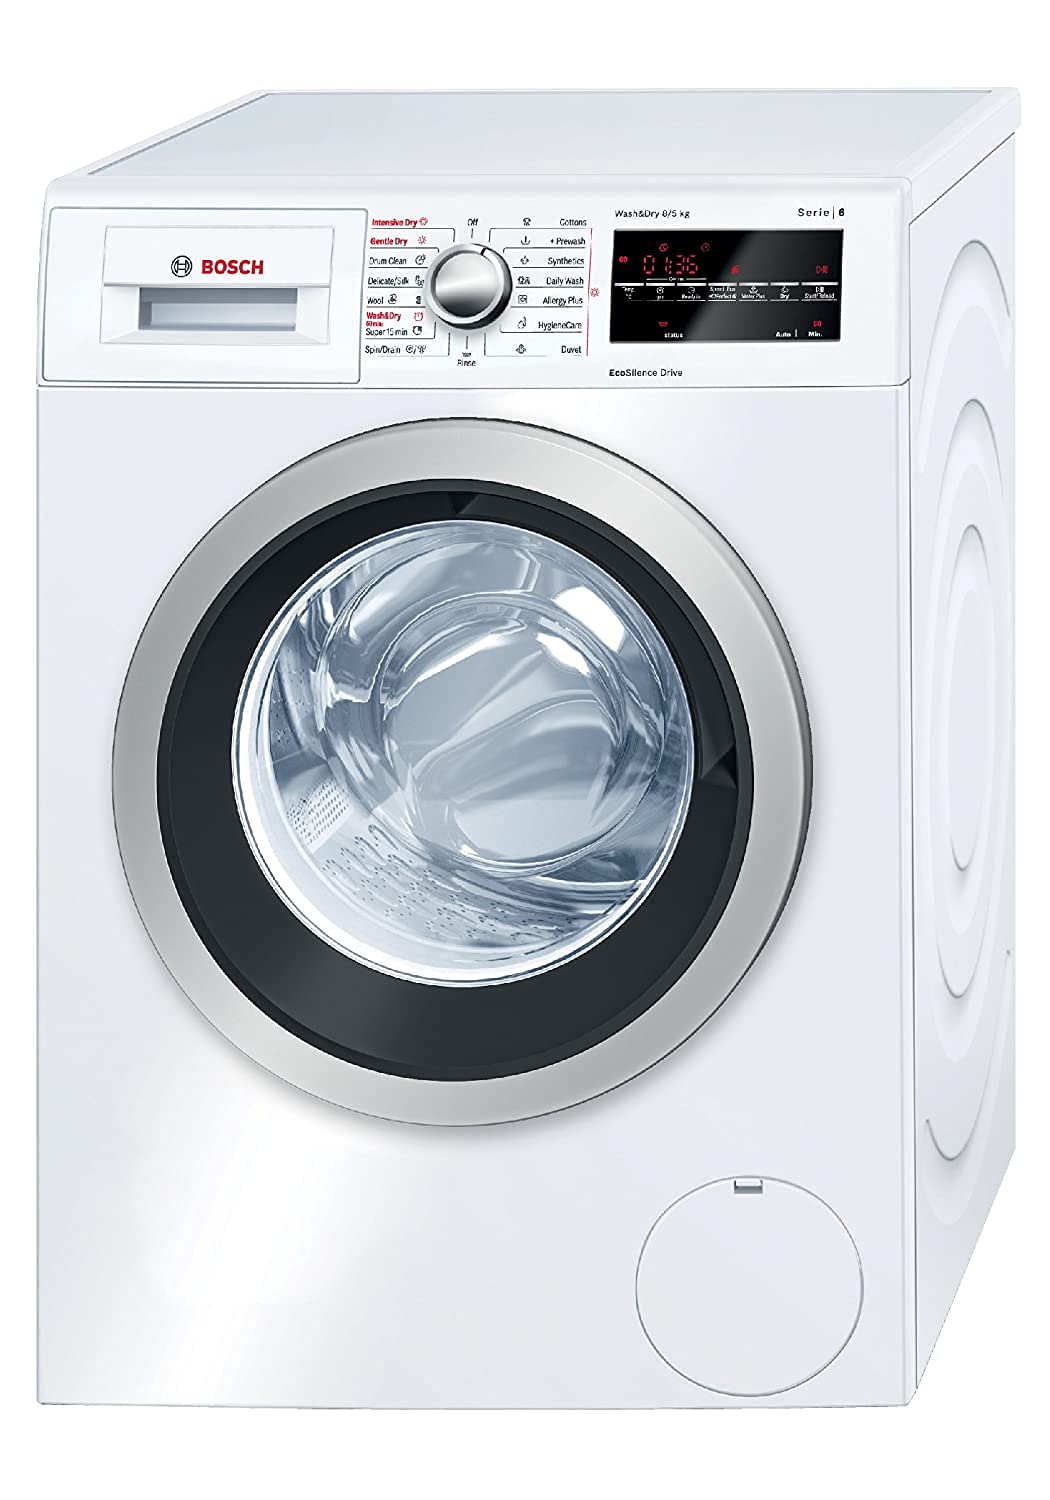 Amazon पर सबसे ज्यादा बिकने वाले बेस्ट 5 Washer Dryer, पूरी तरह से सूख जाते हैं कपड़े